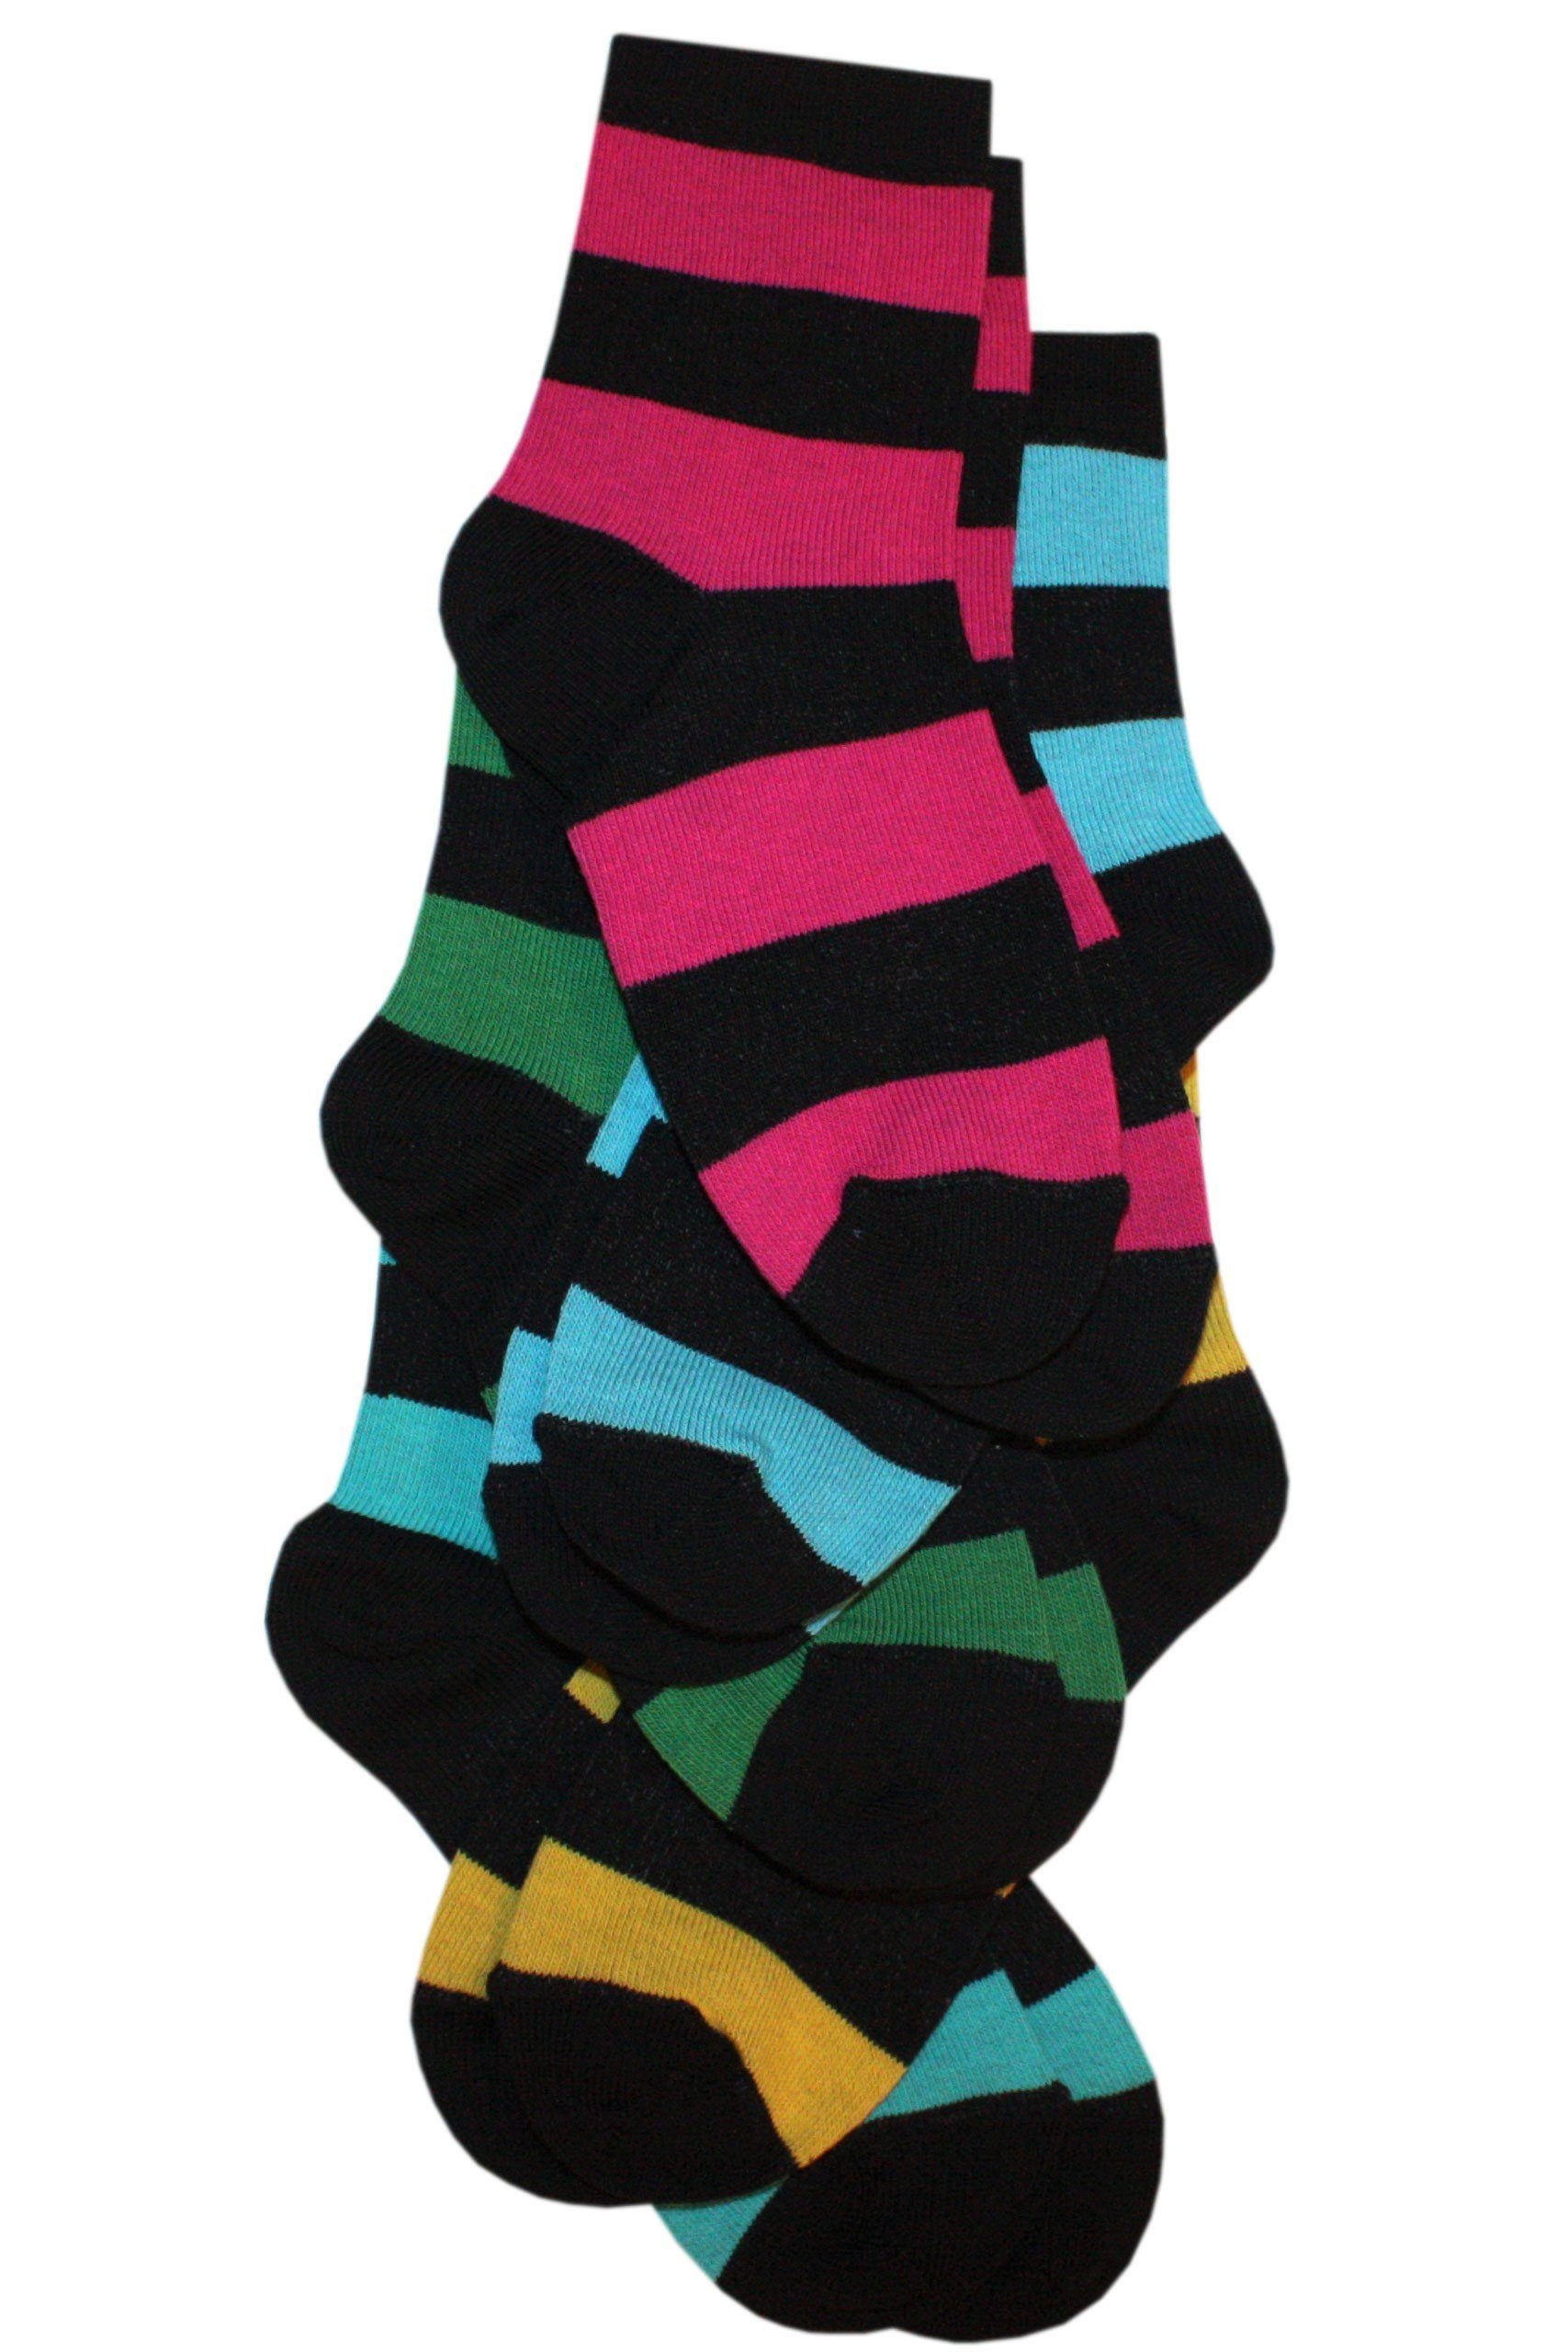 Wäsche/Bademode Socken WERI SPEZIALS Strumpfhersteller GmbH Socken Kinder Socken 5-er Pack Blockringel aus Baumwolle (Set) 5er-P